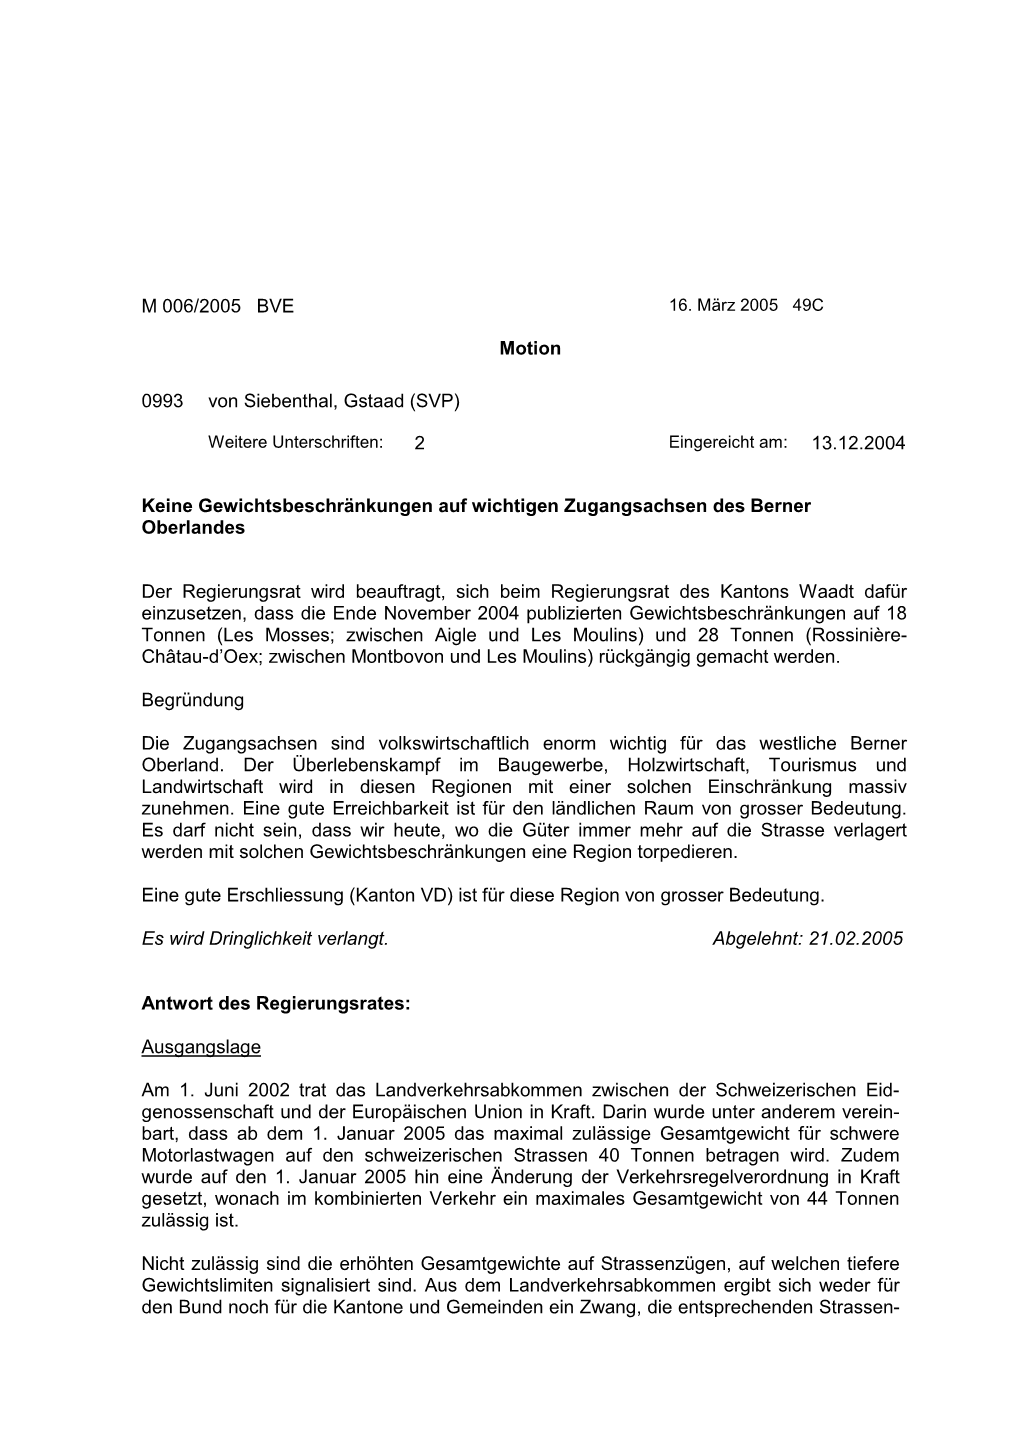 M 006/2005 BVE Motion 0993 Von Siebenthal, Gstaad (SVP) 2 Keine Gewichtsbeschränkungen Auf Wichtigen Zugangsachsen Des Berner O